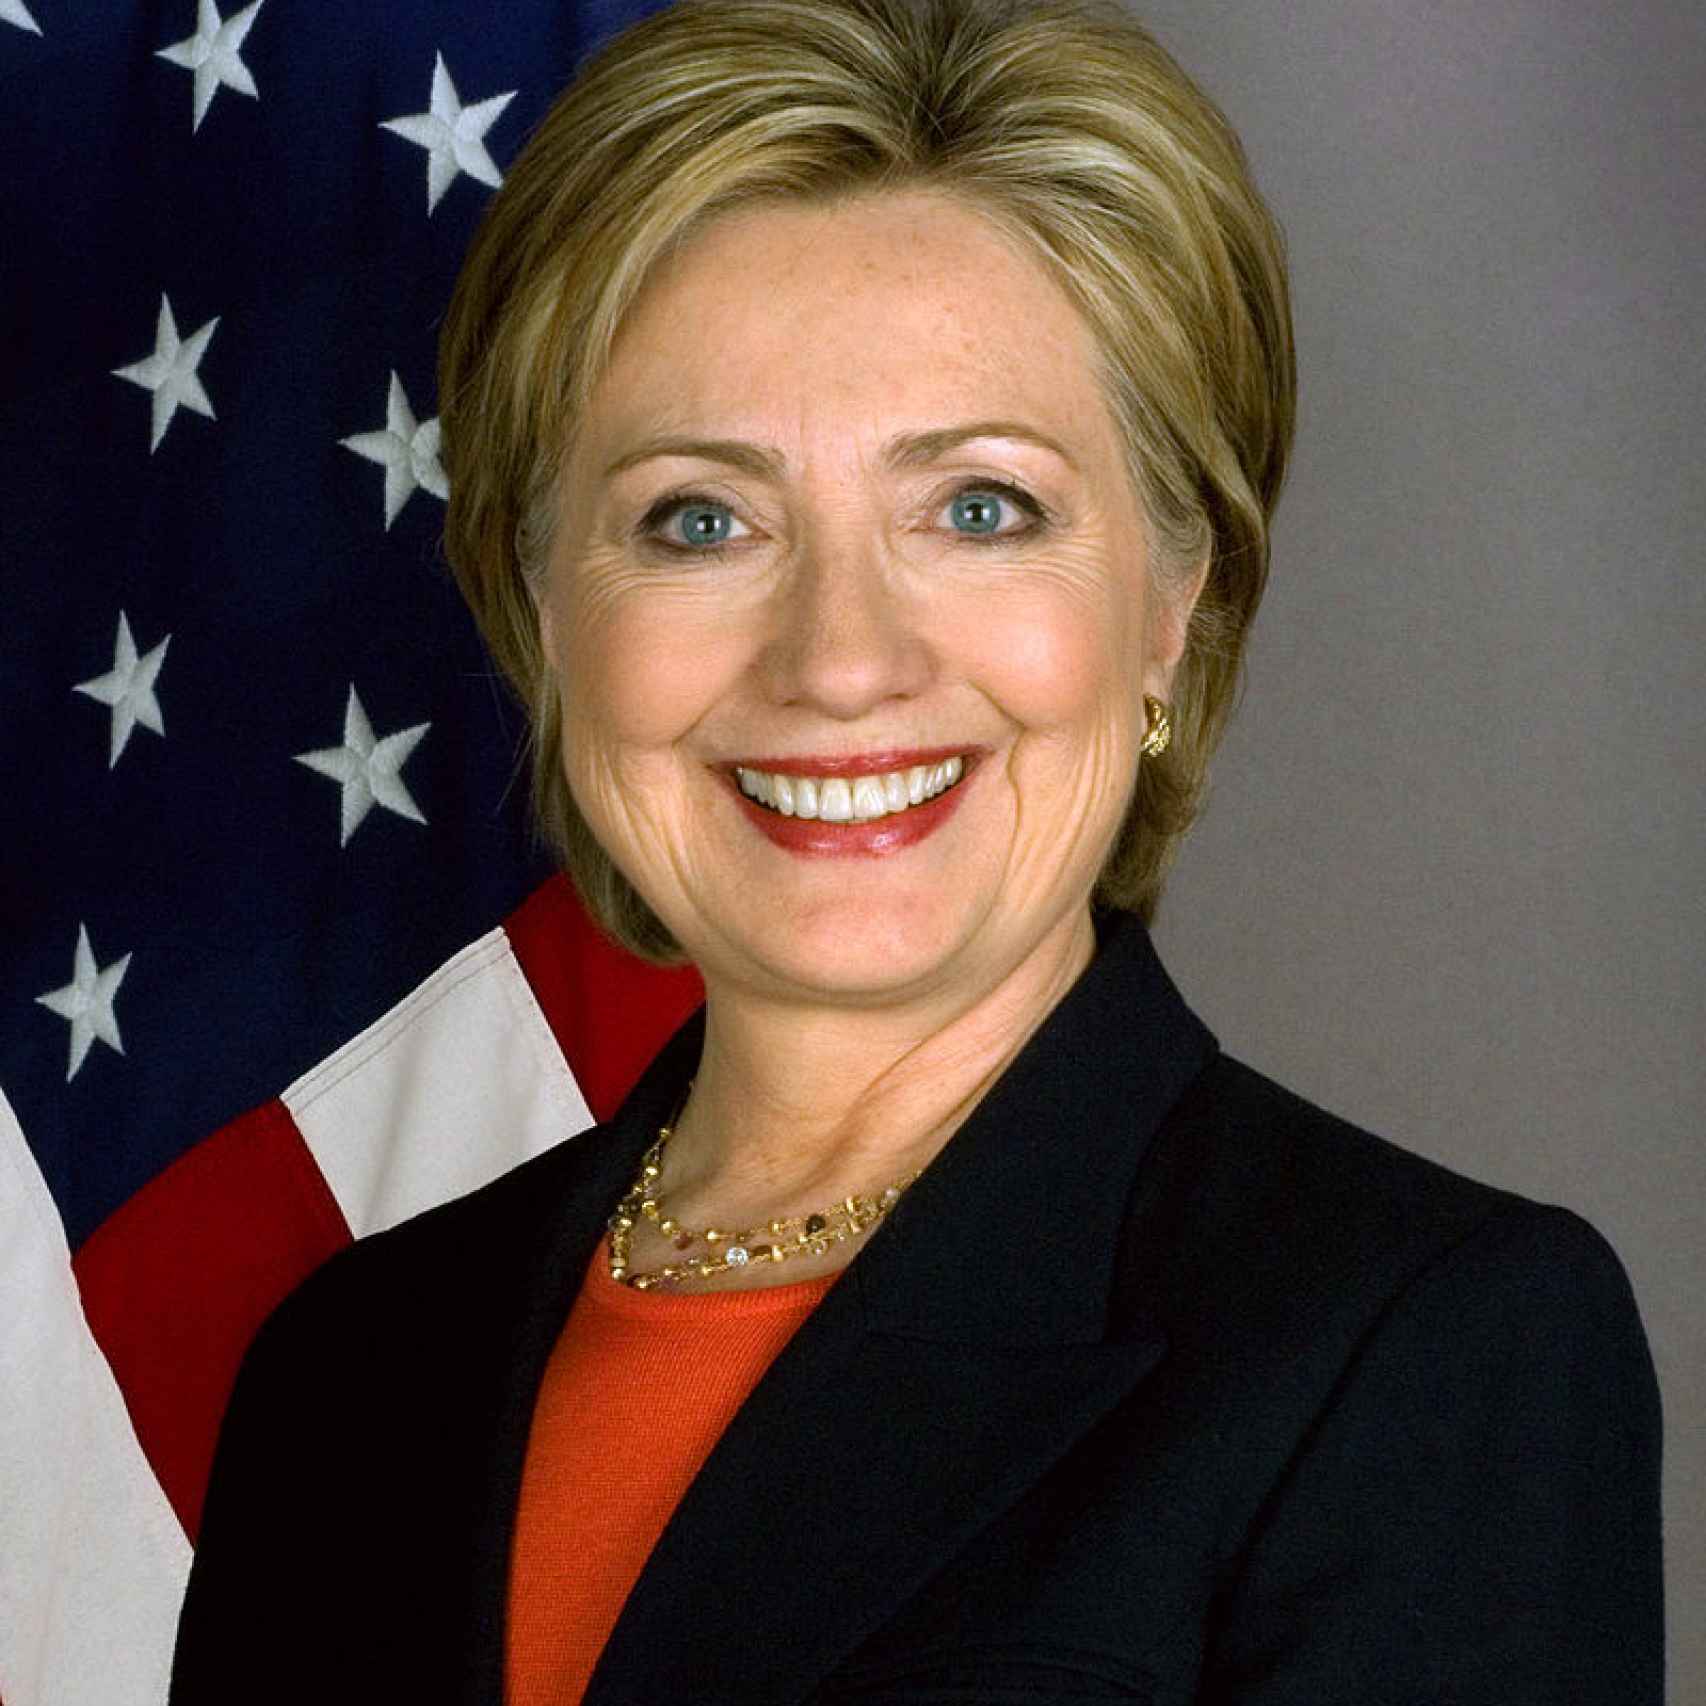 Hillary Clinton, en una de las imágenes promocionales de la campaña.